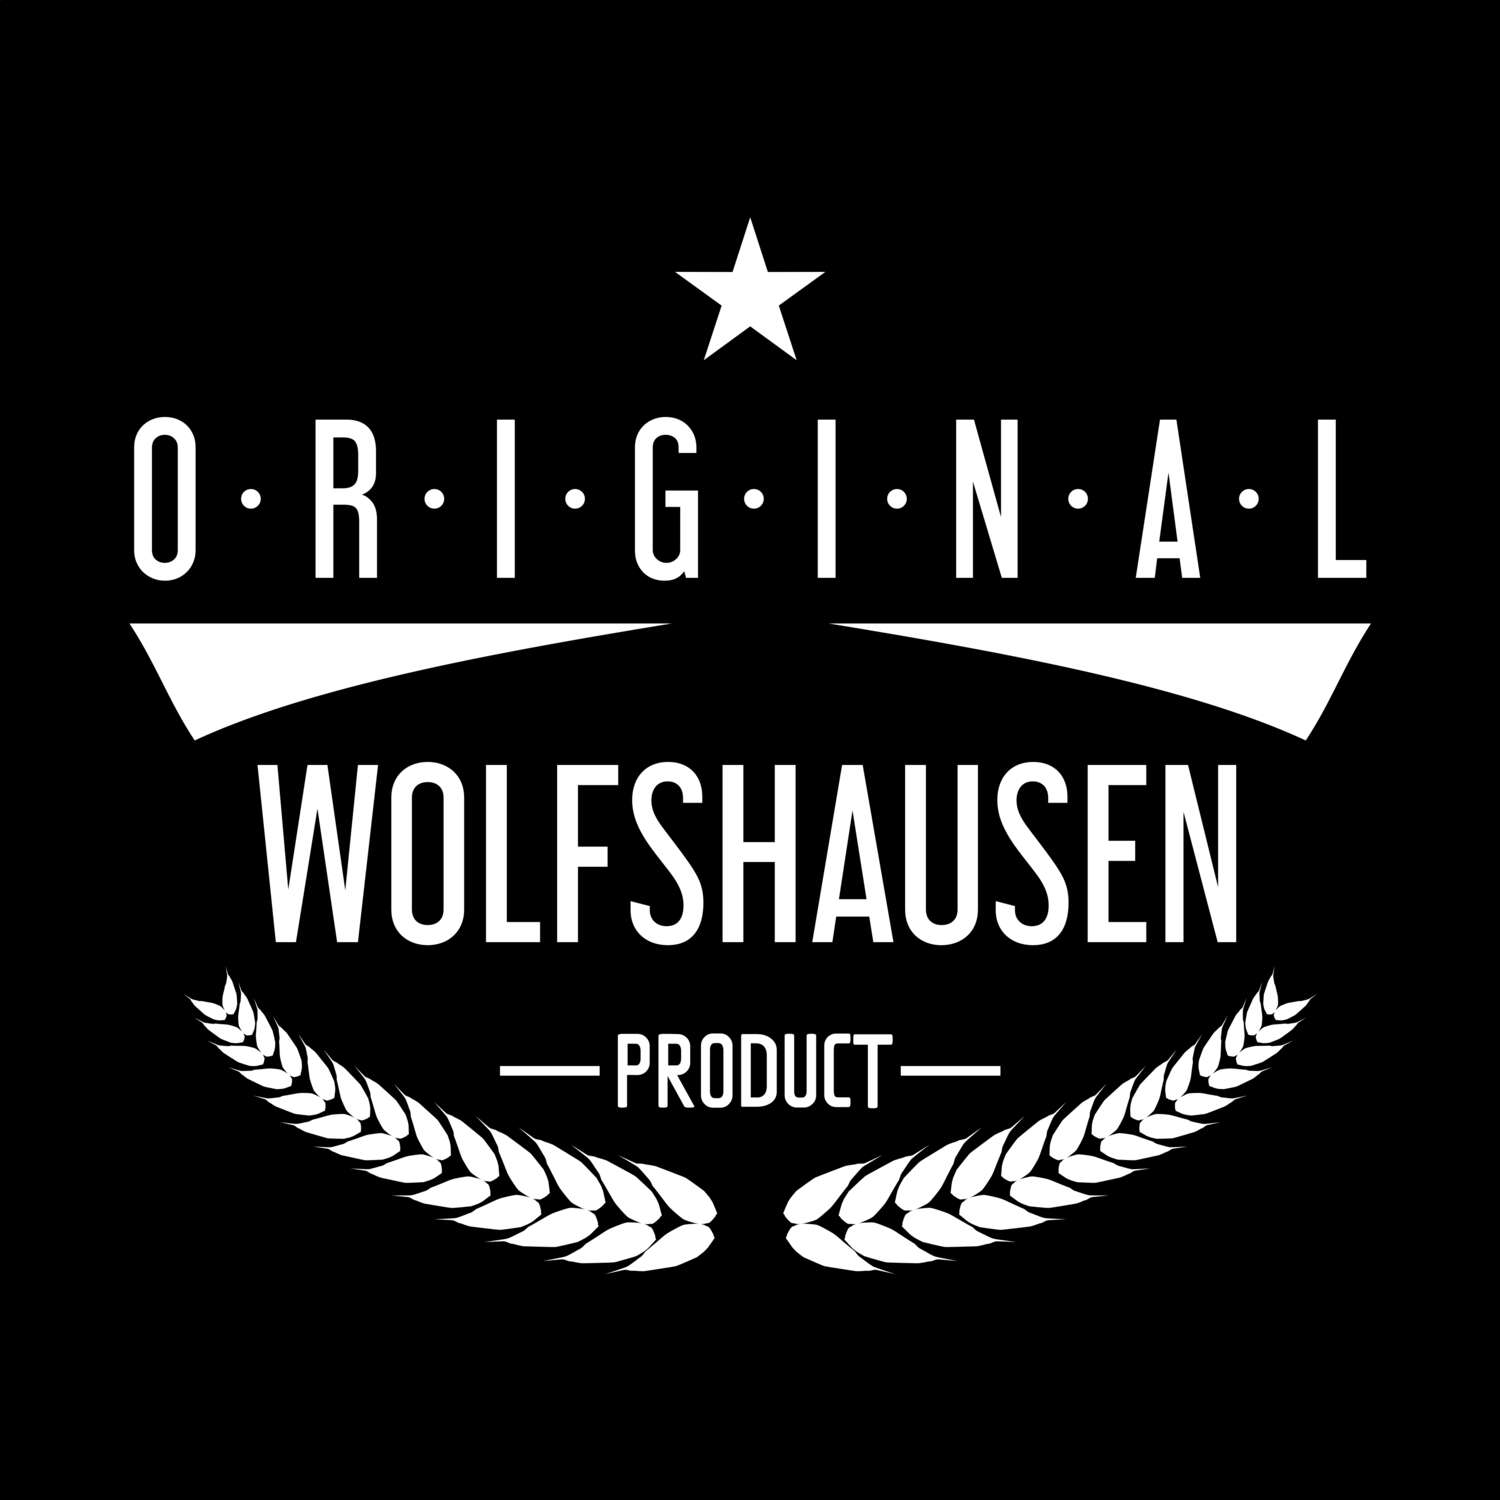 Wolfshausen T-Shirt »Original Product«